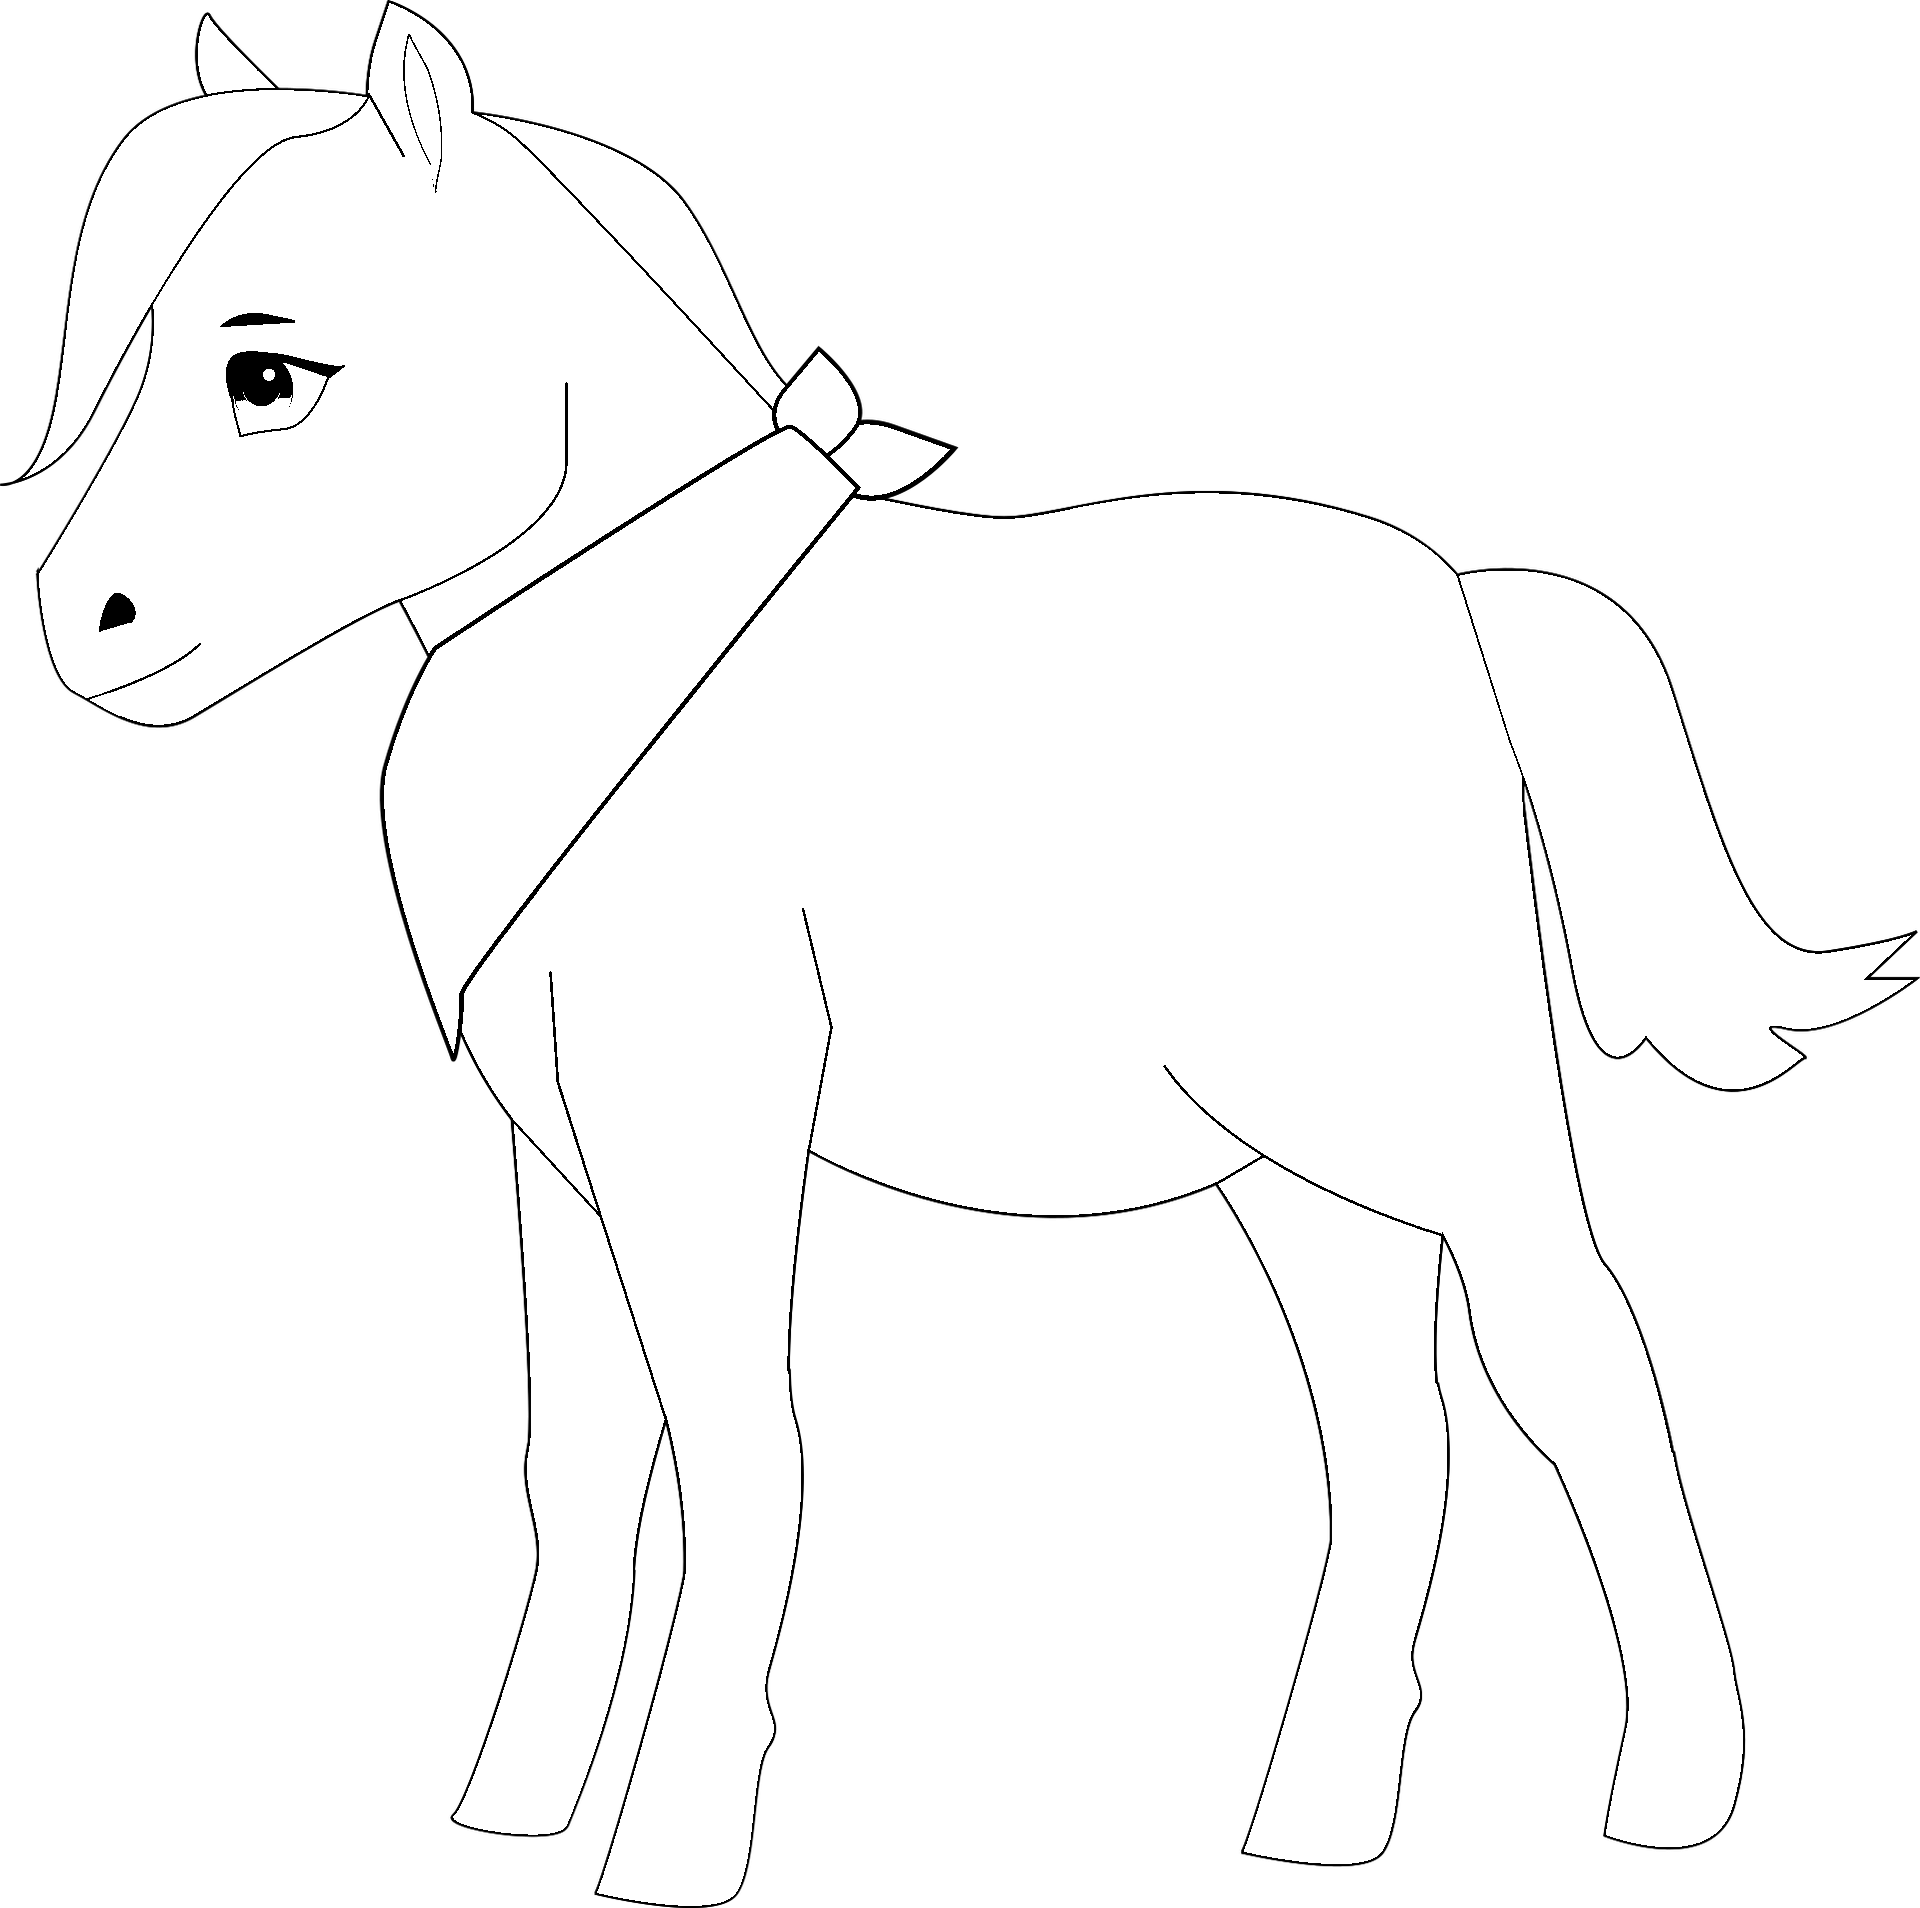 Dibujo de Caballo Pony kawaii para colorear